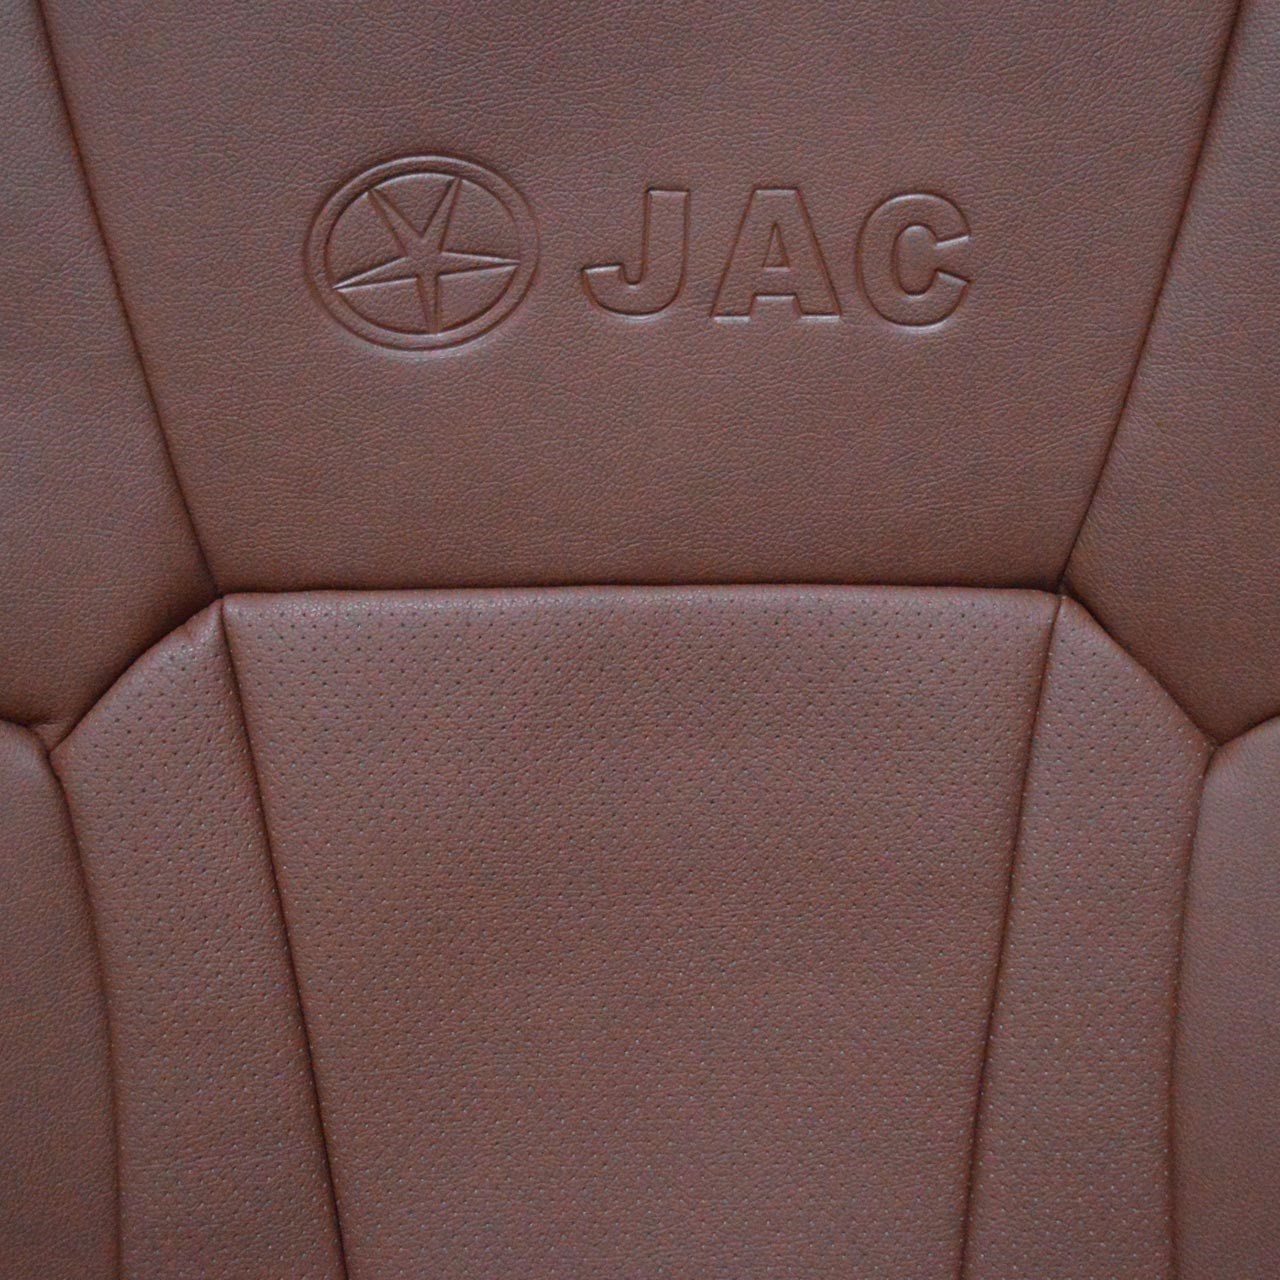 روکش صندلی خودرو یونیک مناسب برای جک S5